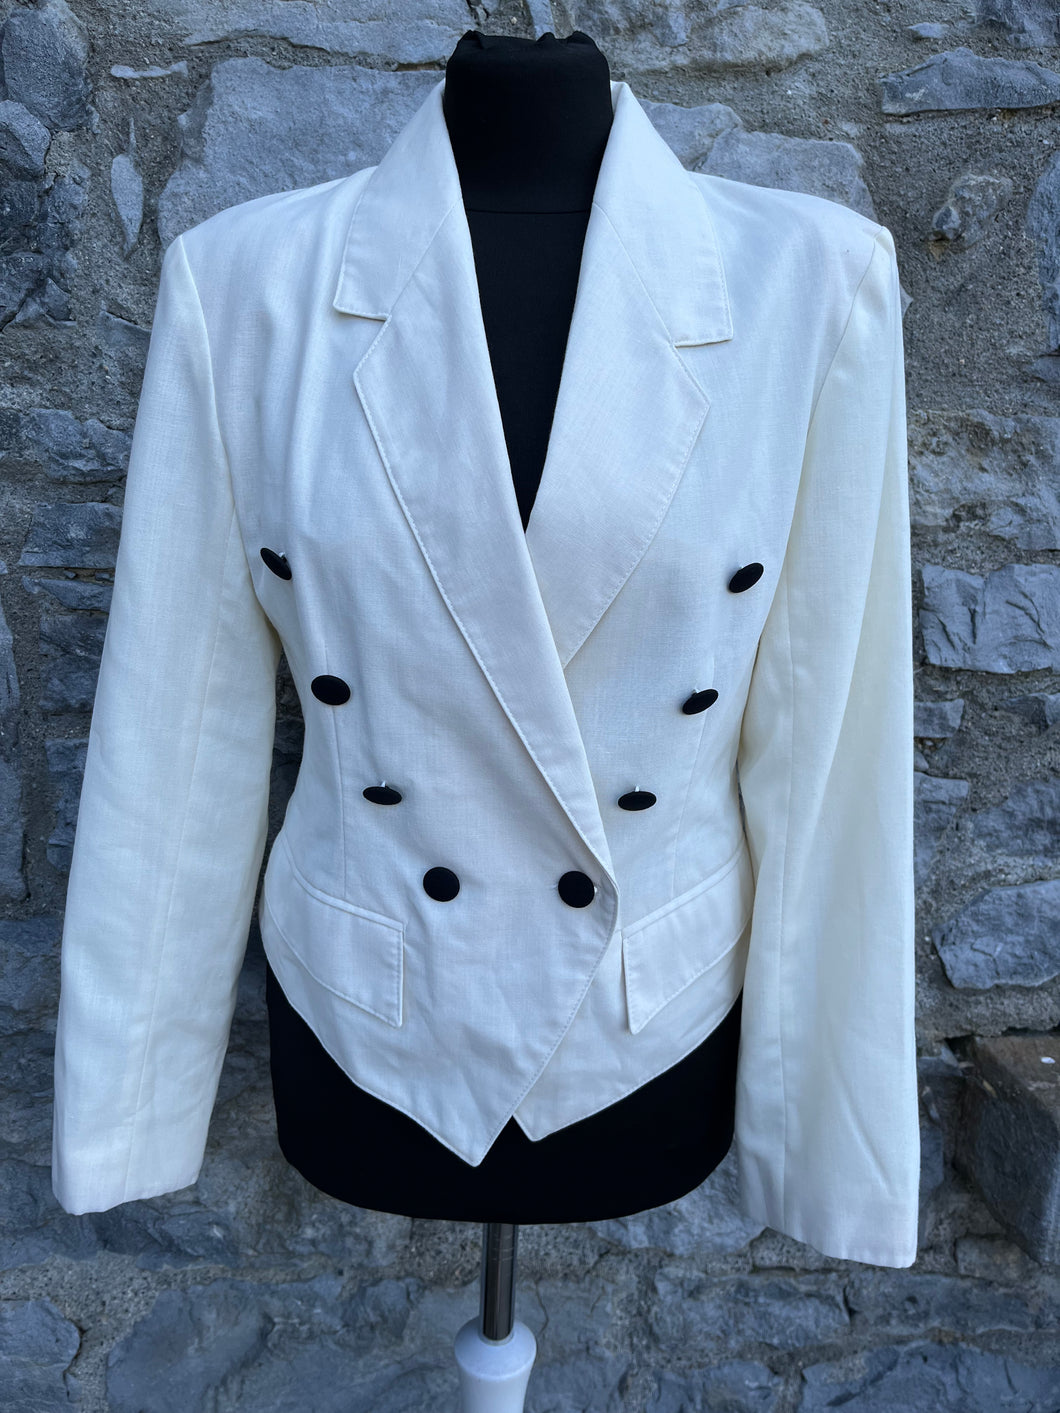 80s white jacket uk 8-10